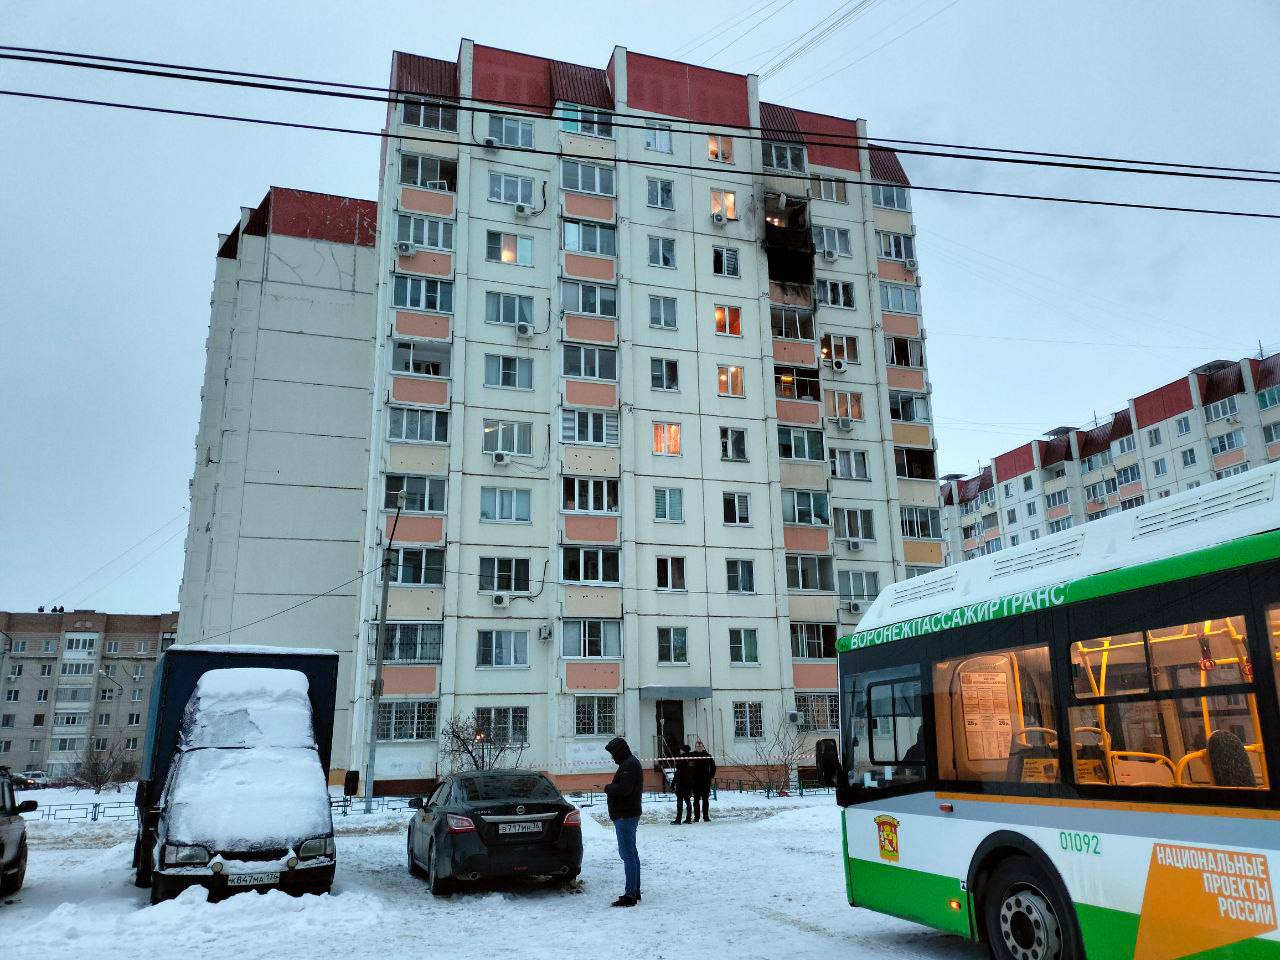 Воронеж атакован беспилотниками этой ночью. По предварительным данным – пострадавших нет. В одном многоквартирном (МКД) доме ликвидировано возгорание на балконе